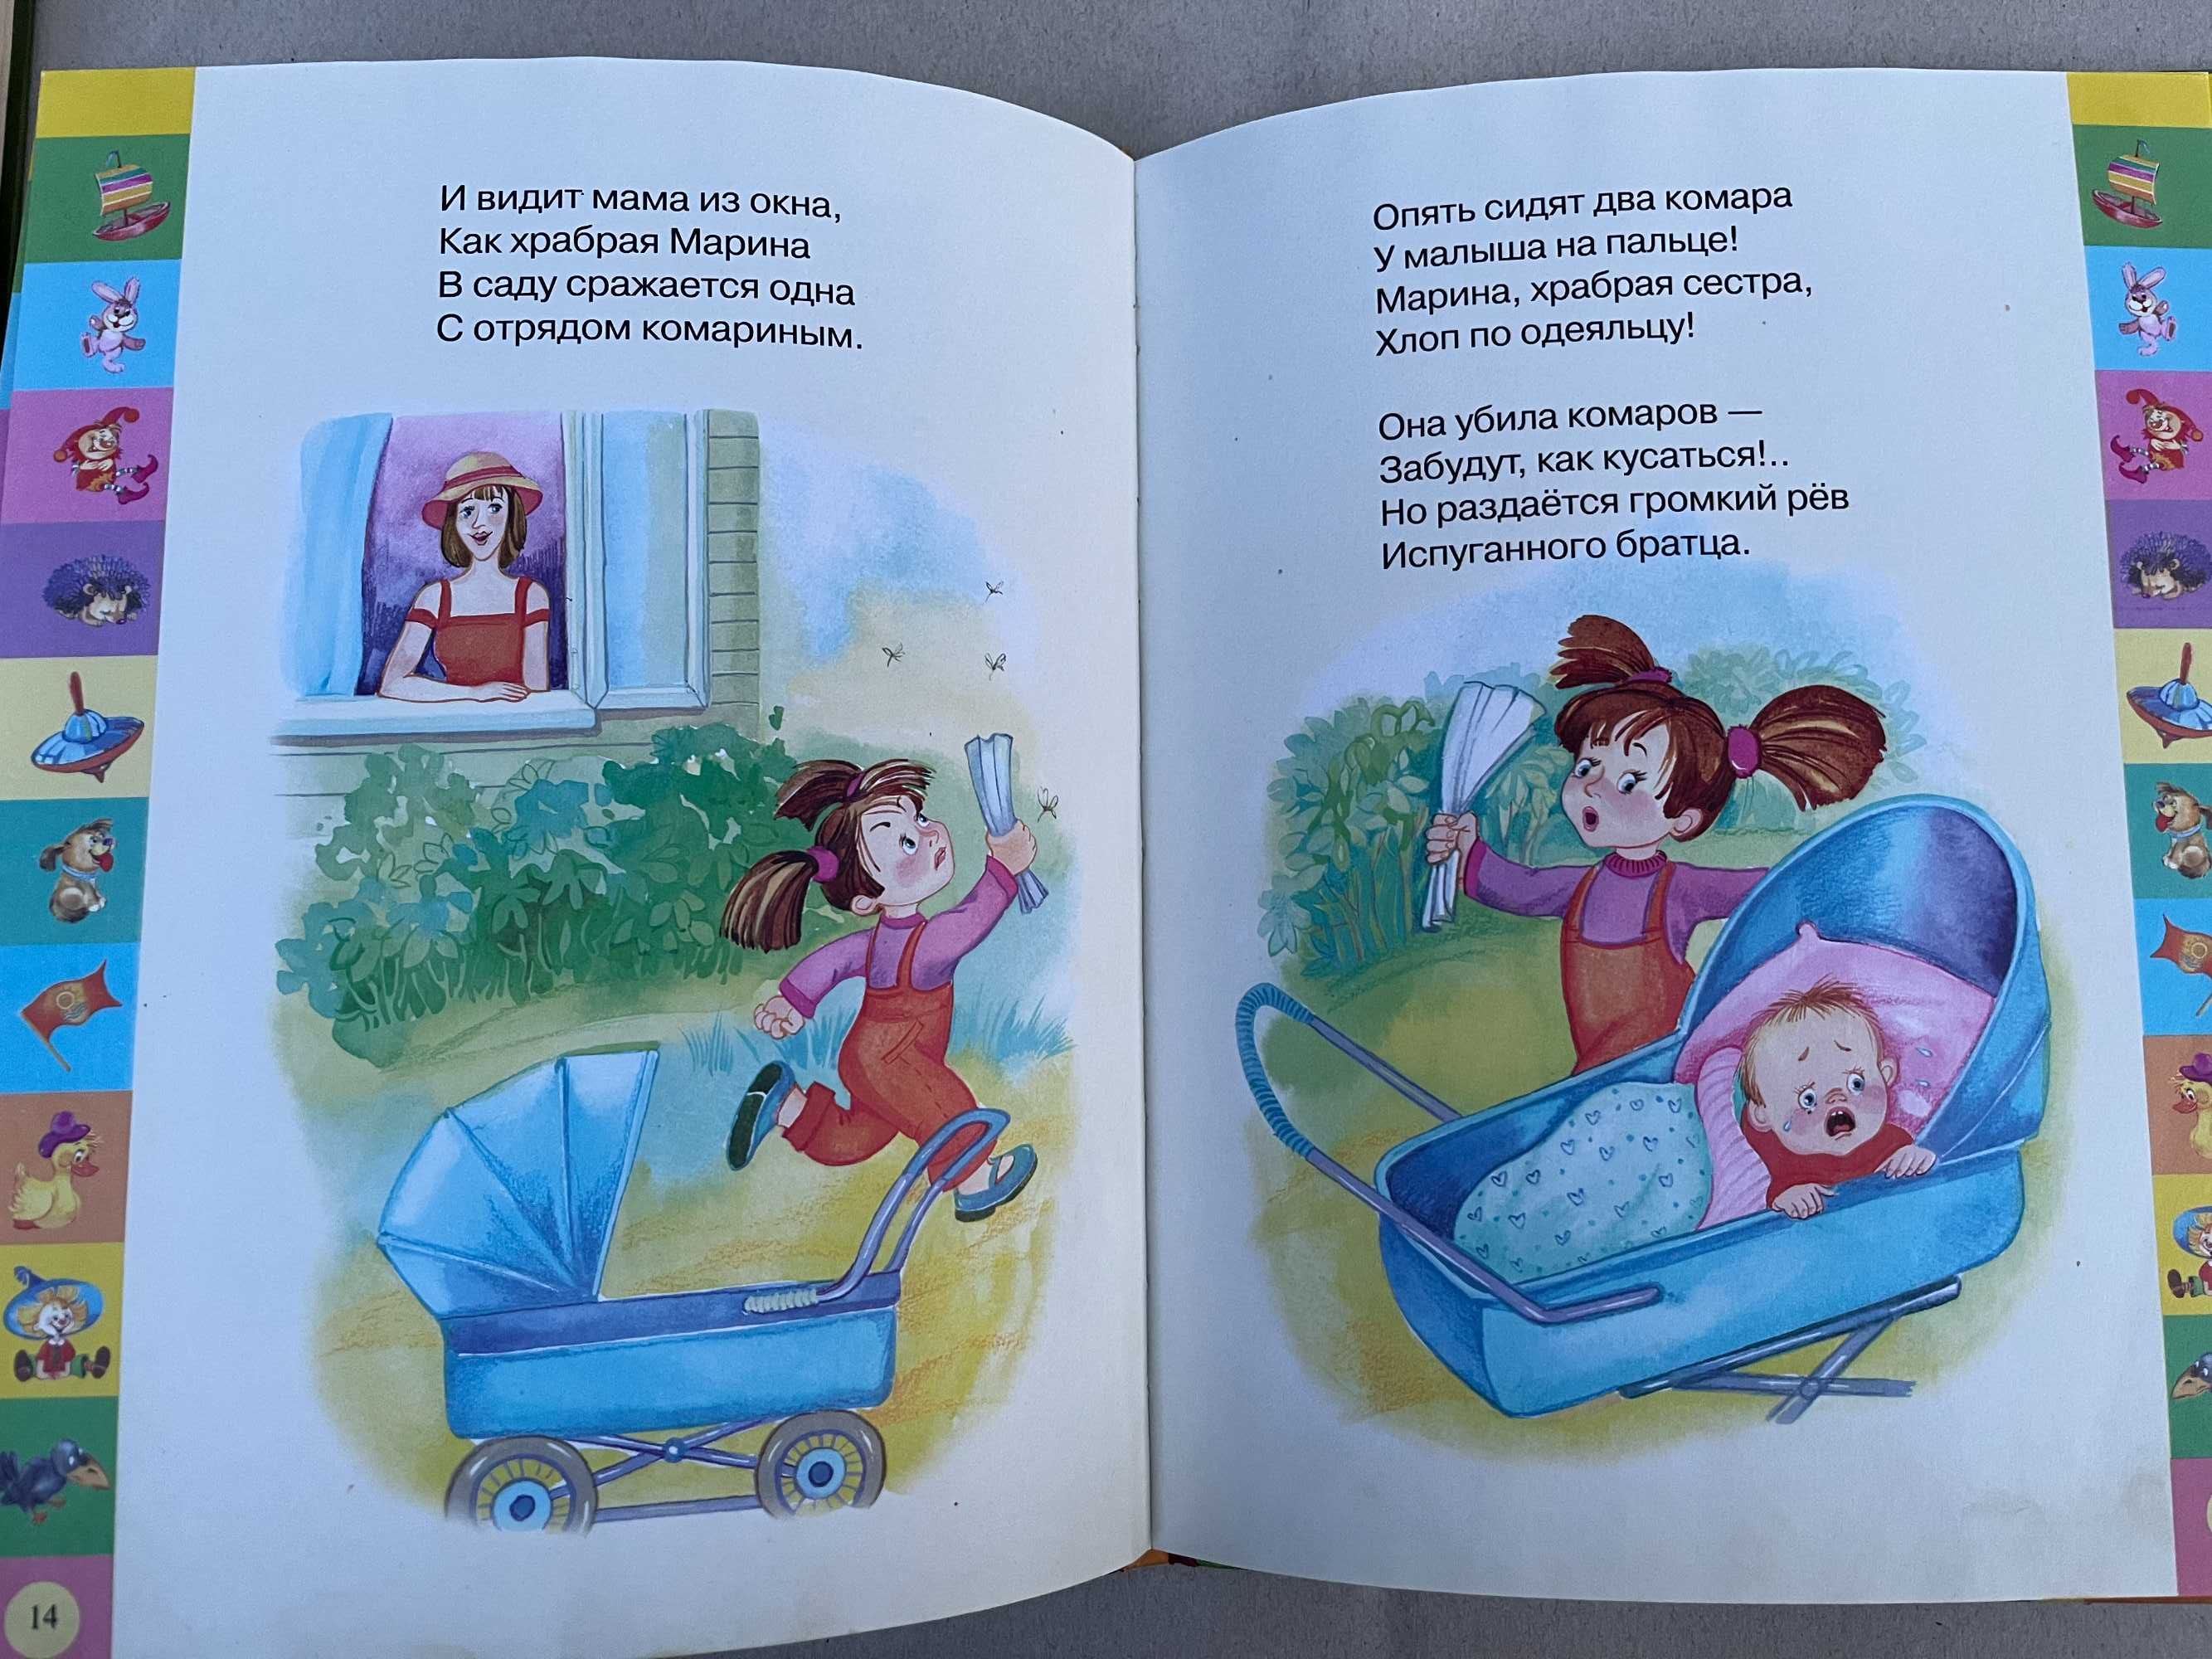 " Детские познавательно-развлекательные книги "